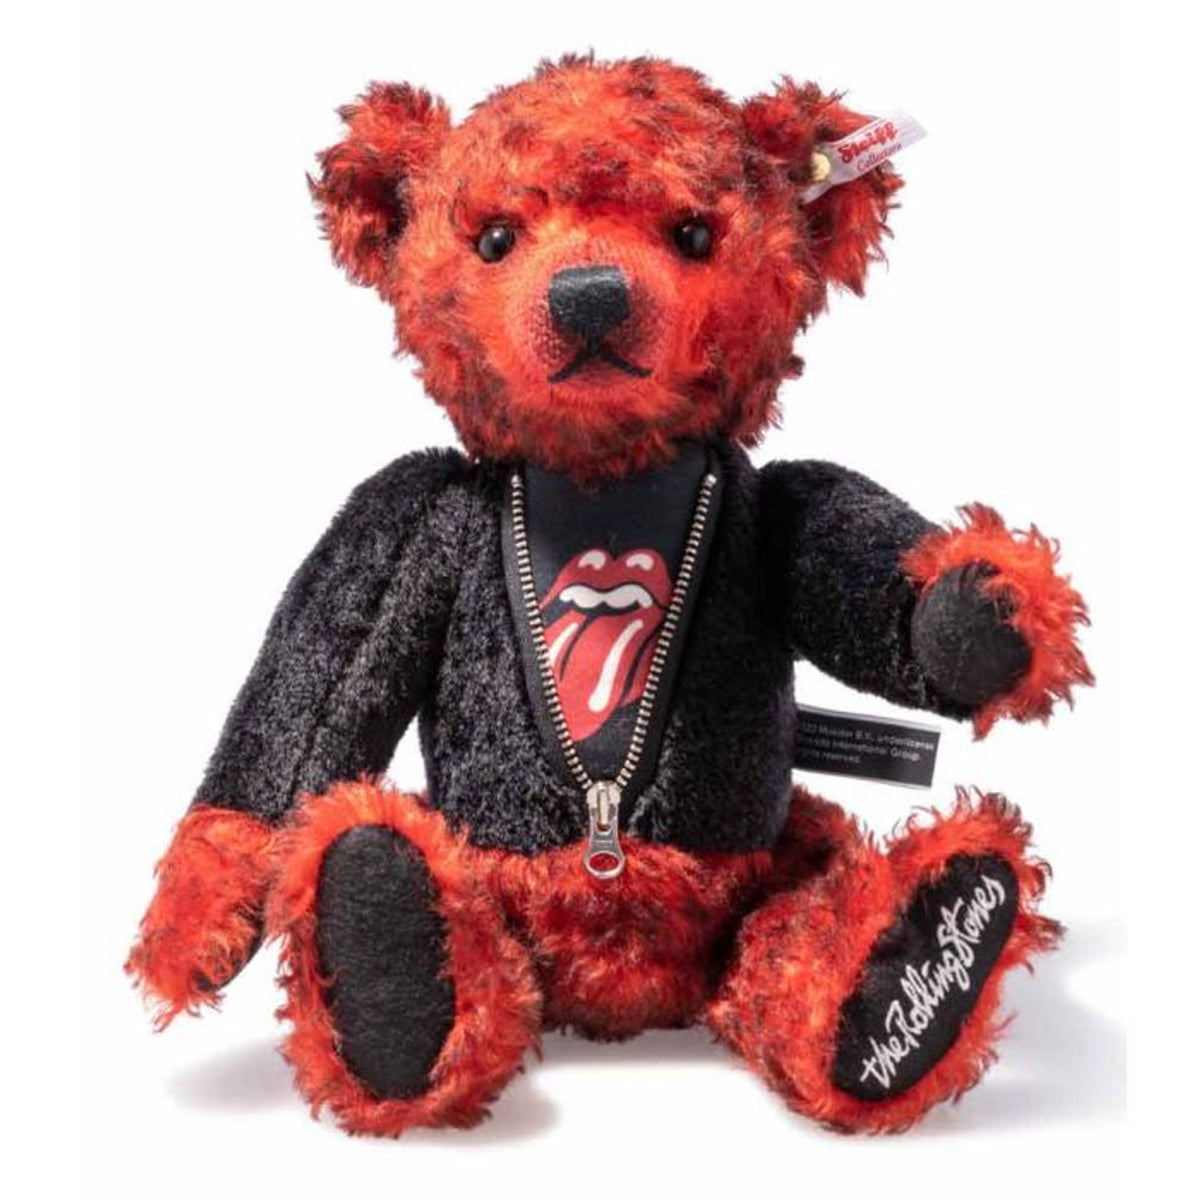 Steiff  Limited Edition Teddy Bear - Rolling Stones, 34 cm